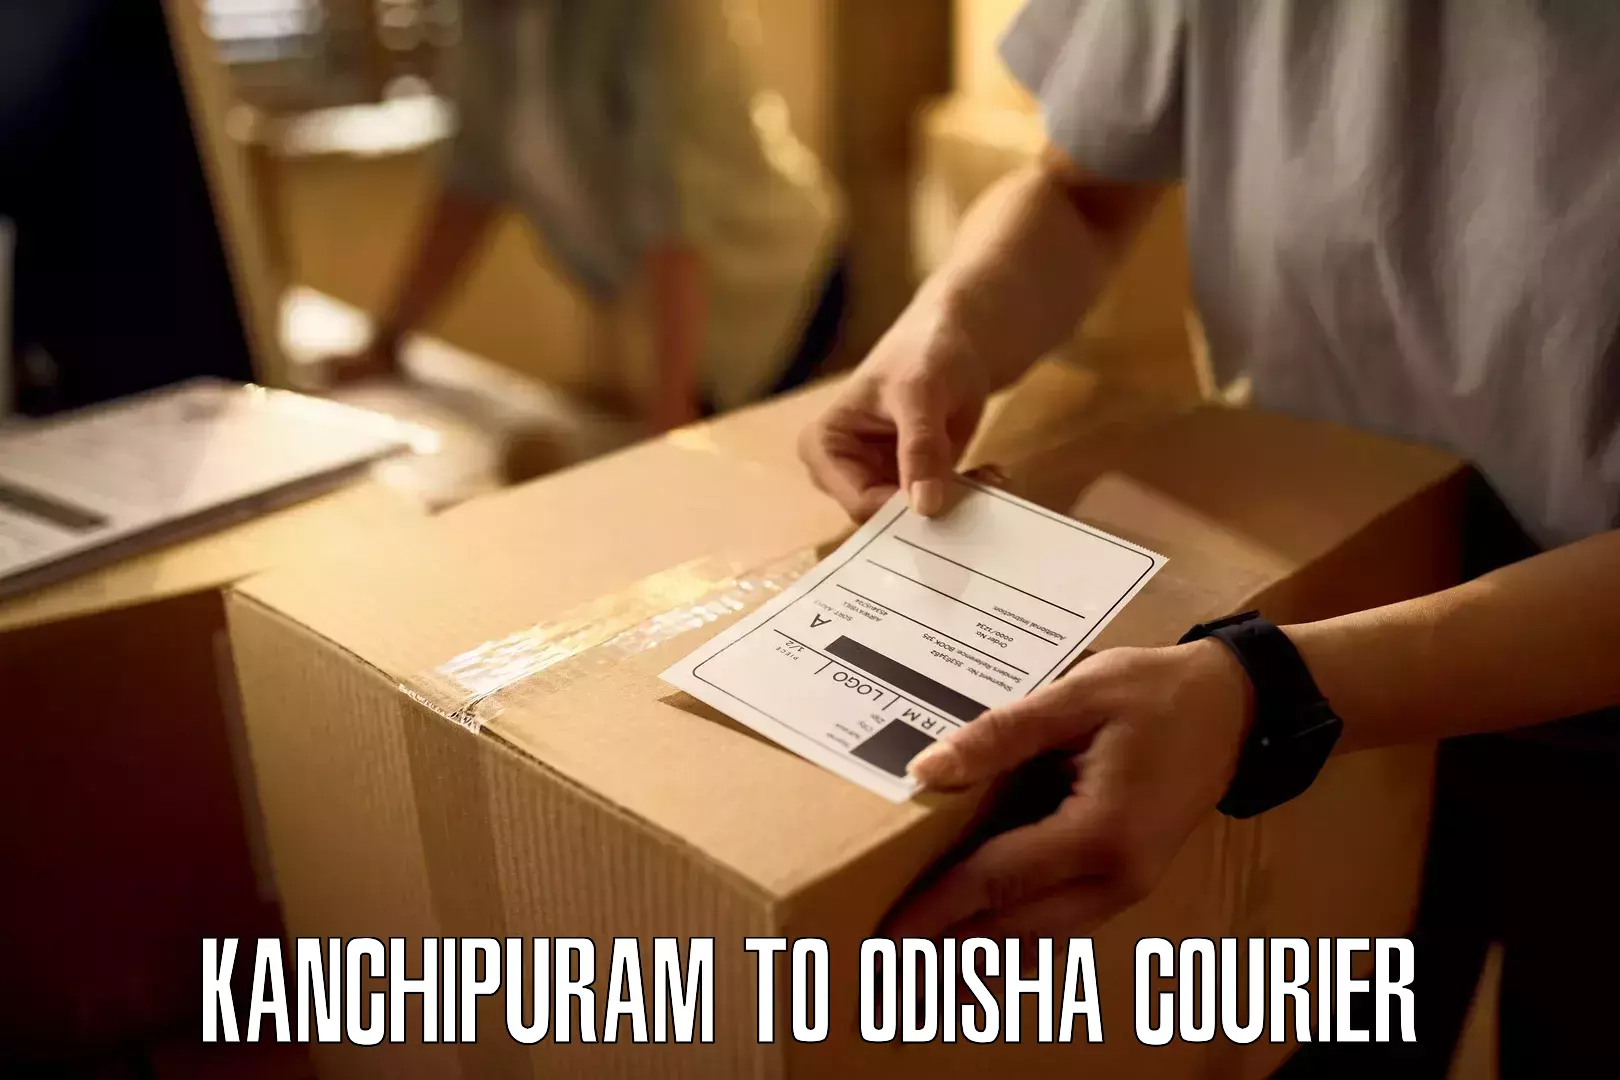 Next-day delivery options Kanchipuram to Kesinga